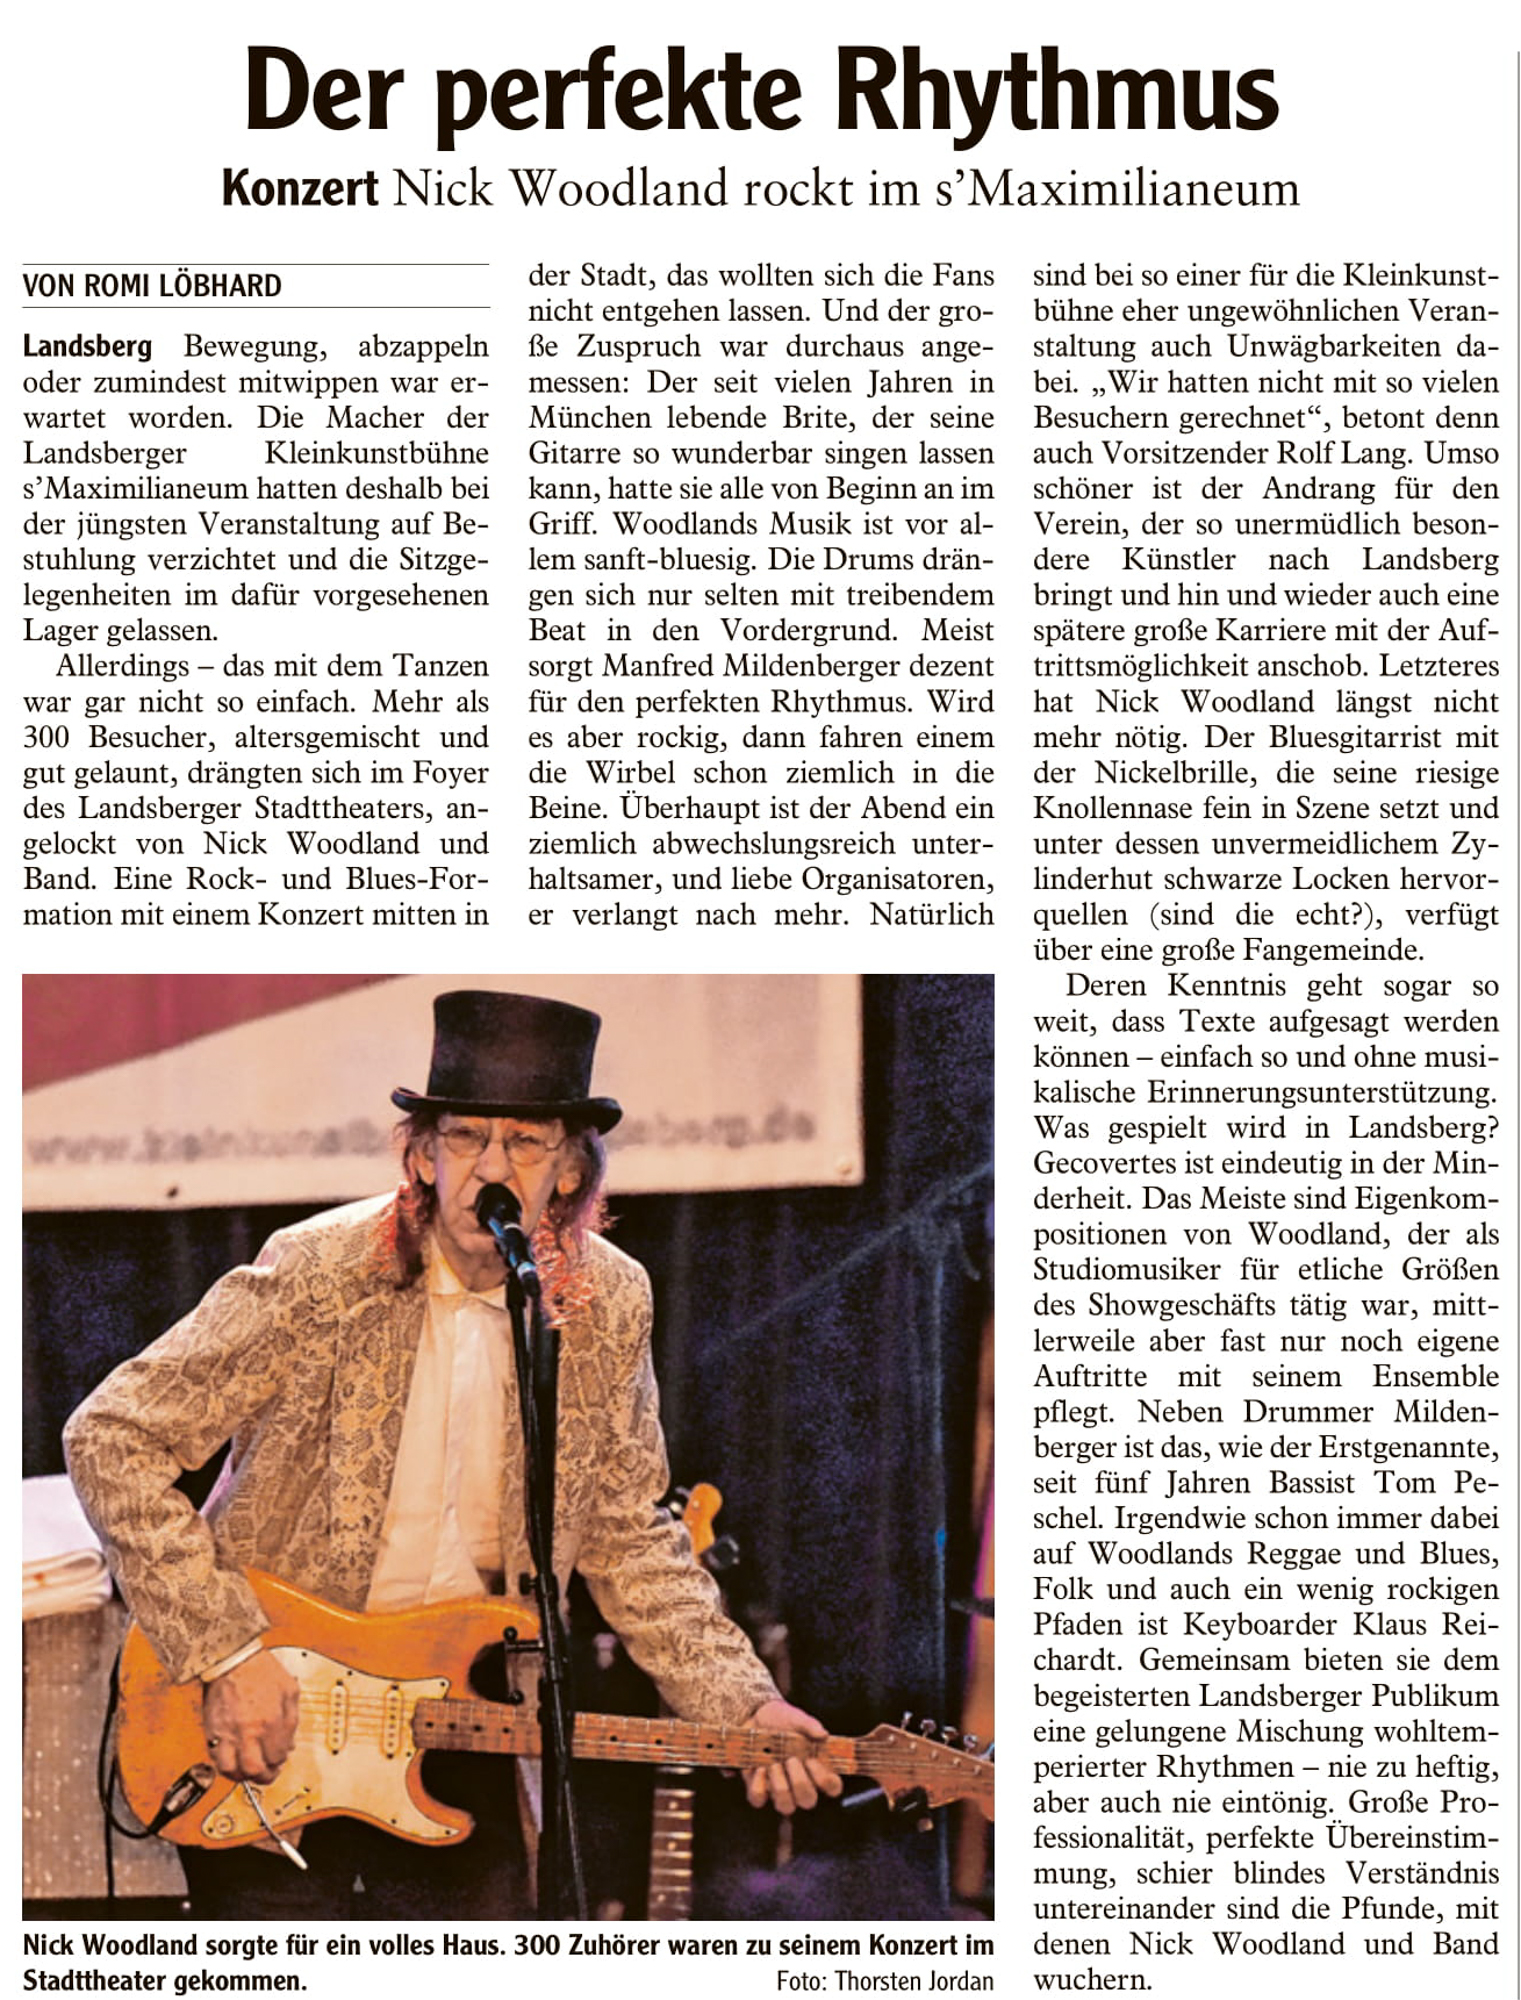 Bild der Kritik aus dem Landsberger Tagblatt vom 03.02.2018